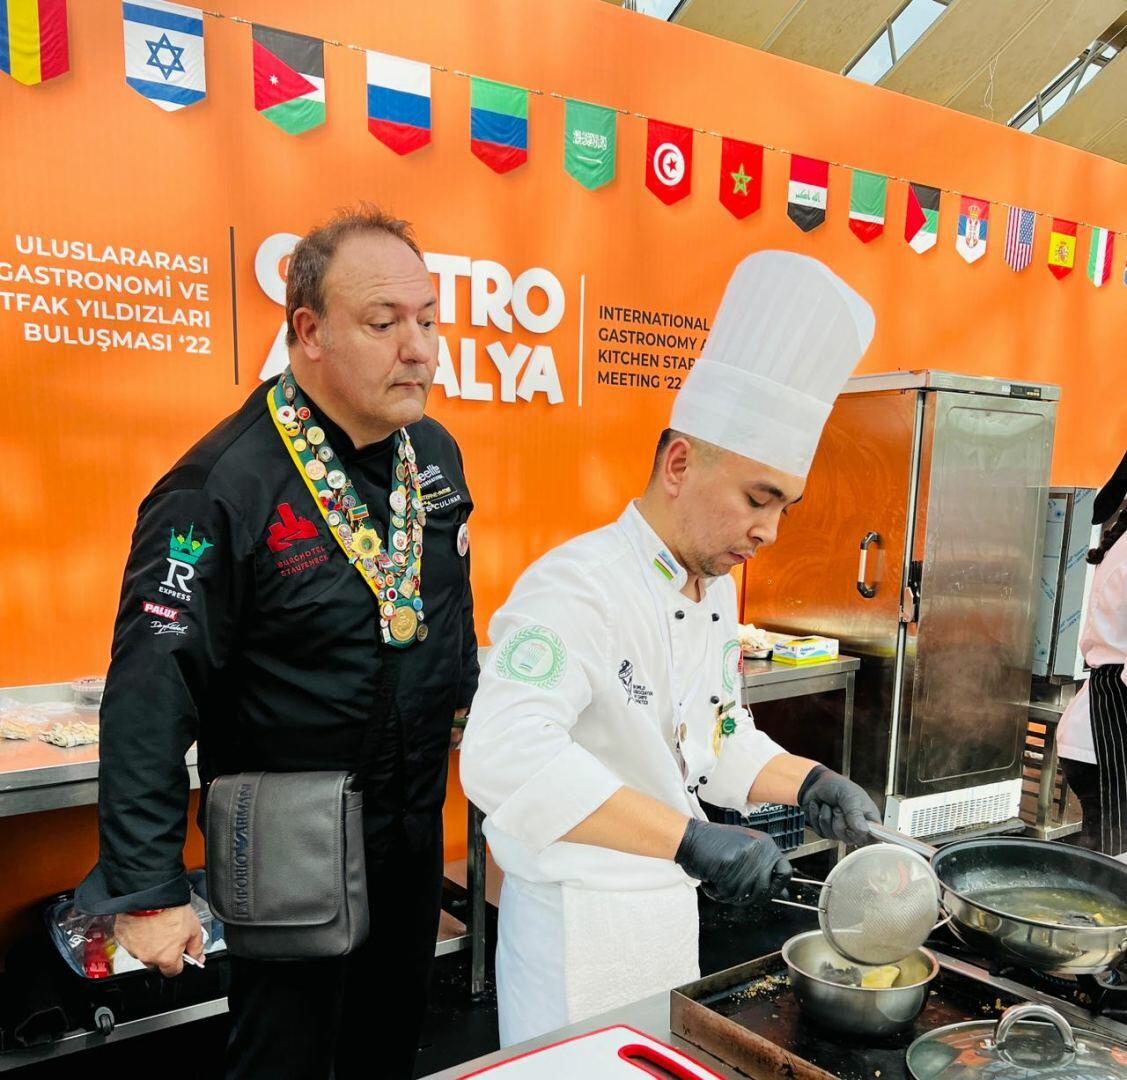 Звездная Анталья! Азербайджанские кулинары определили лучших поваров мира